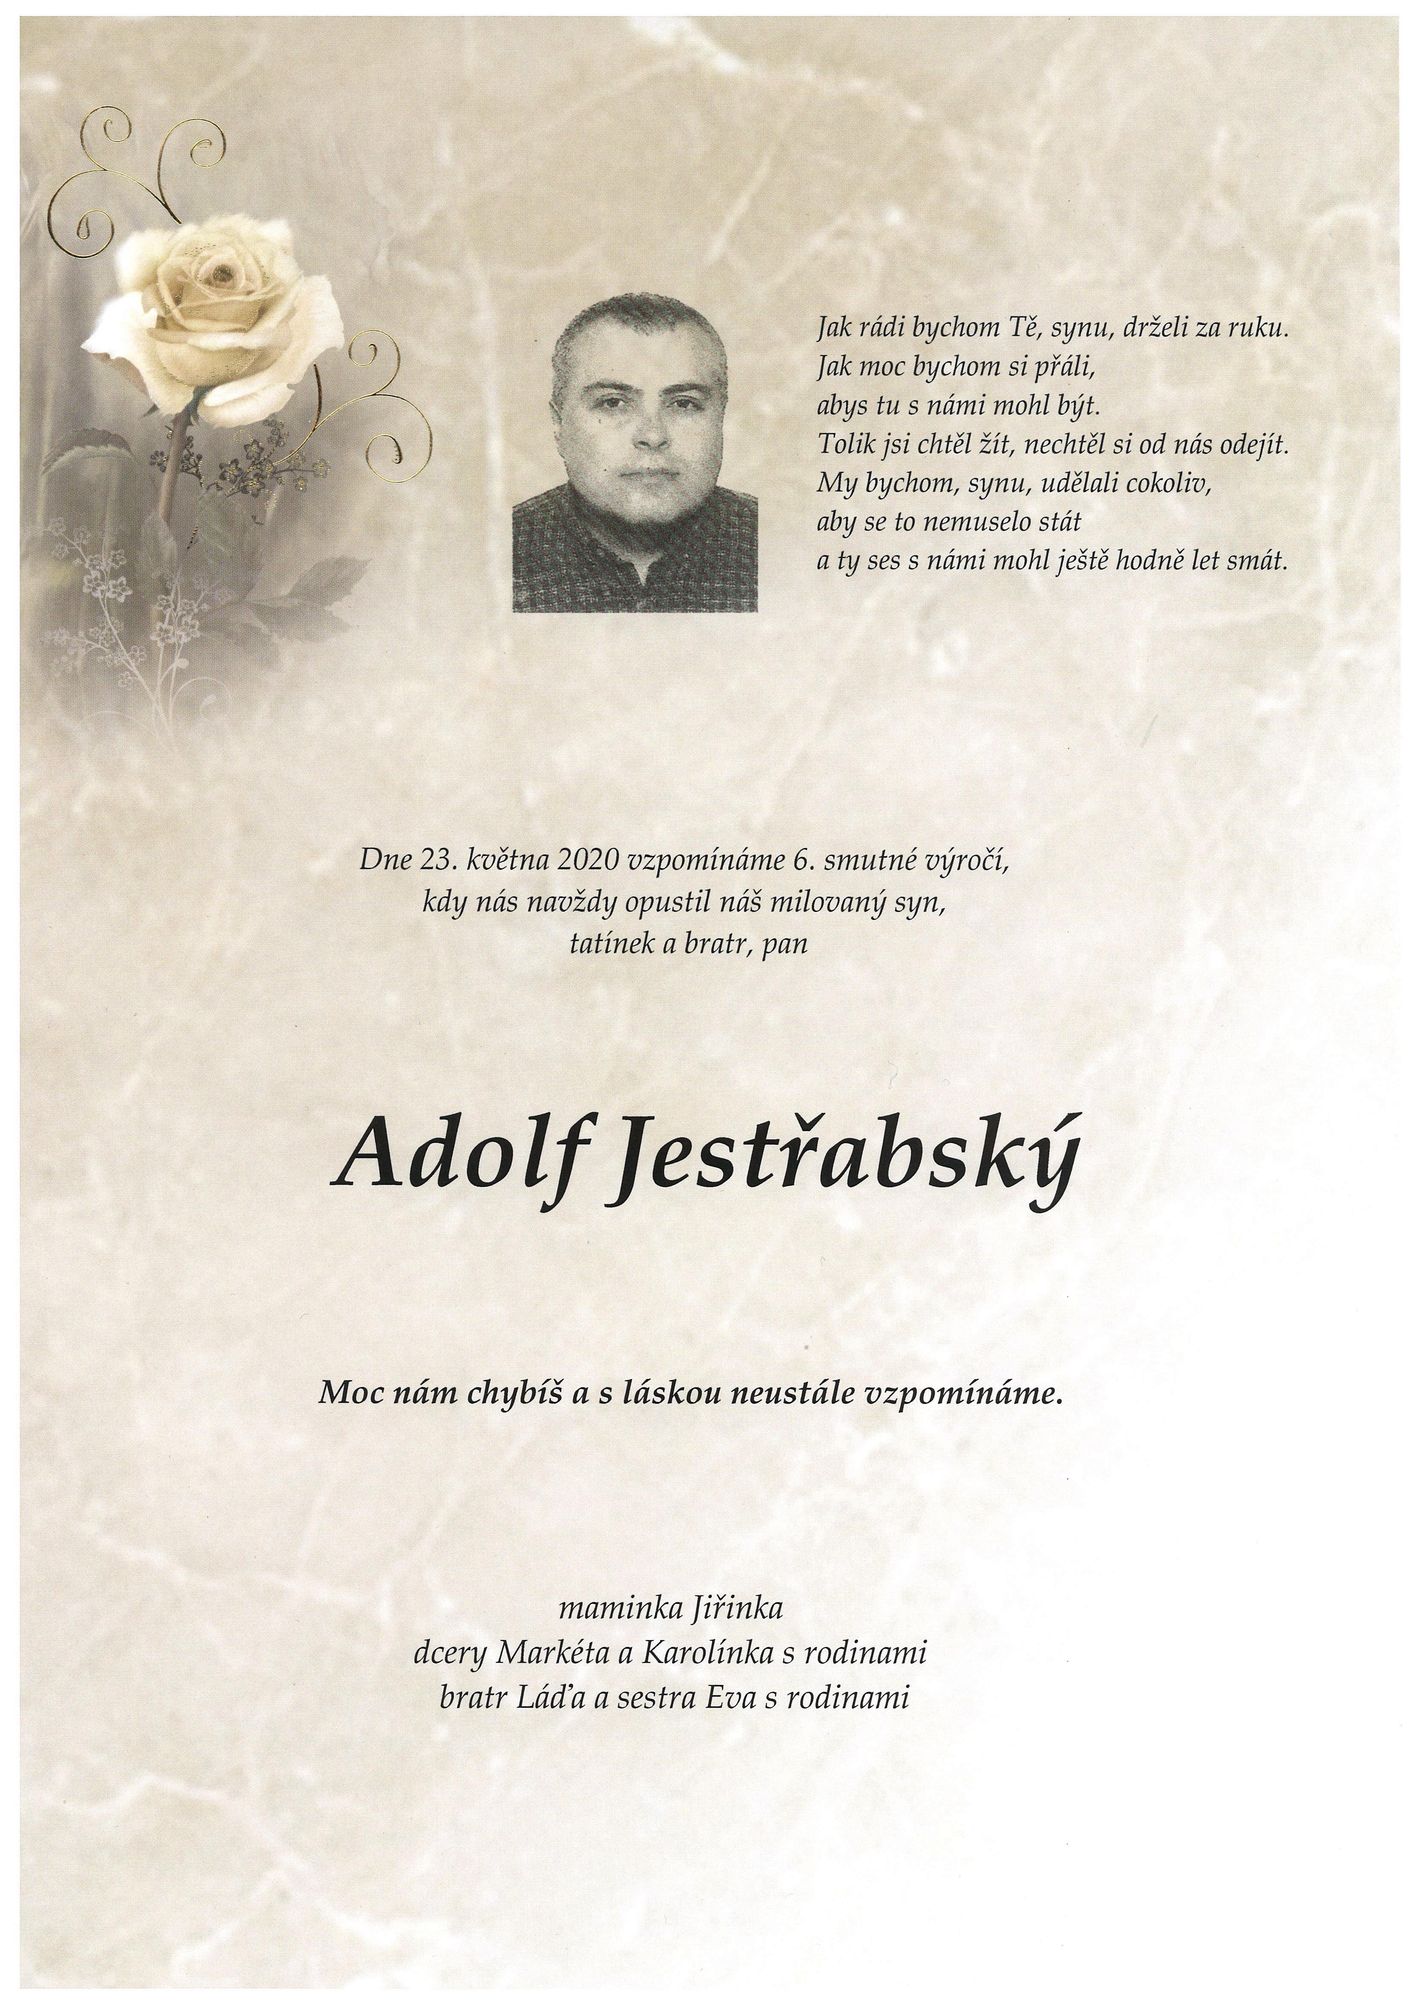 Adolf Jestřabský